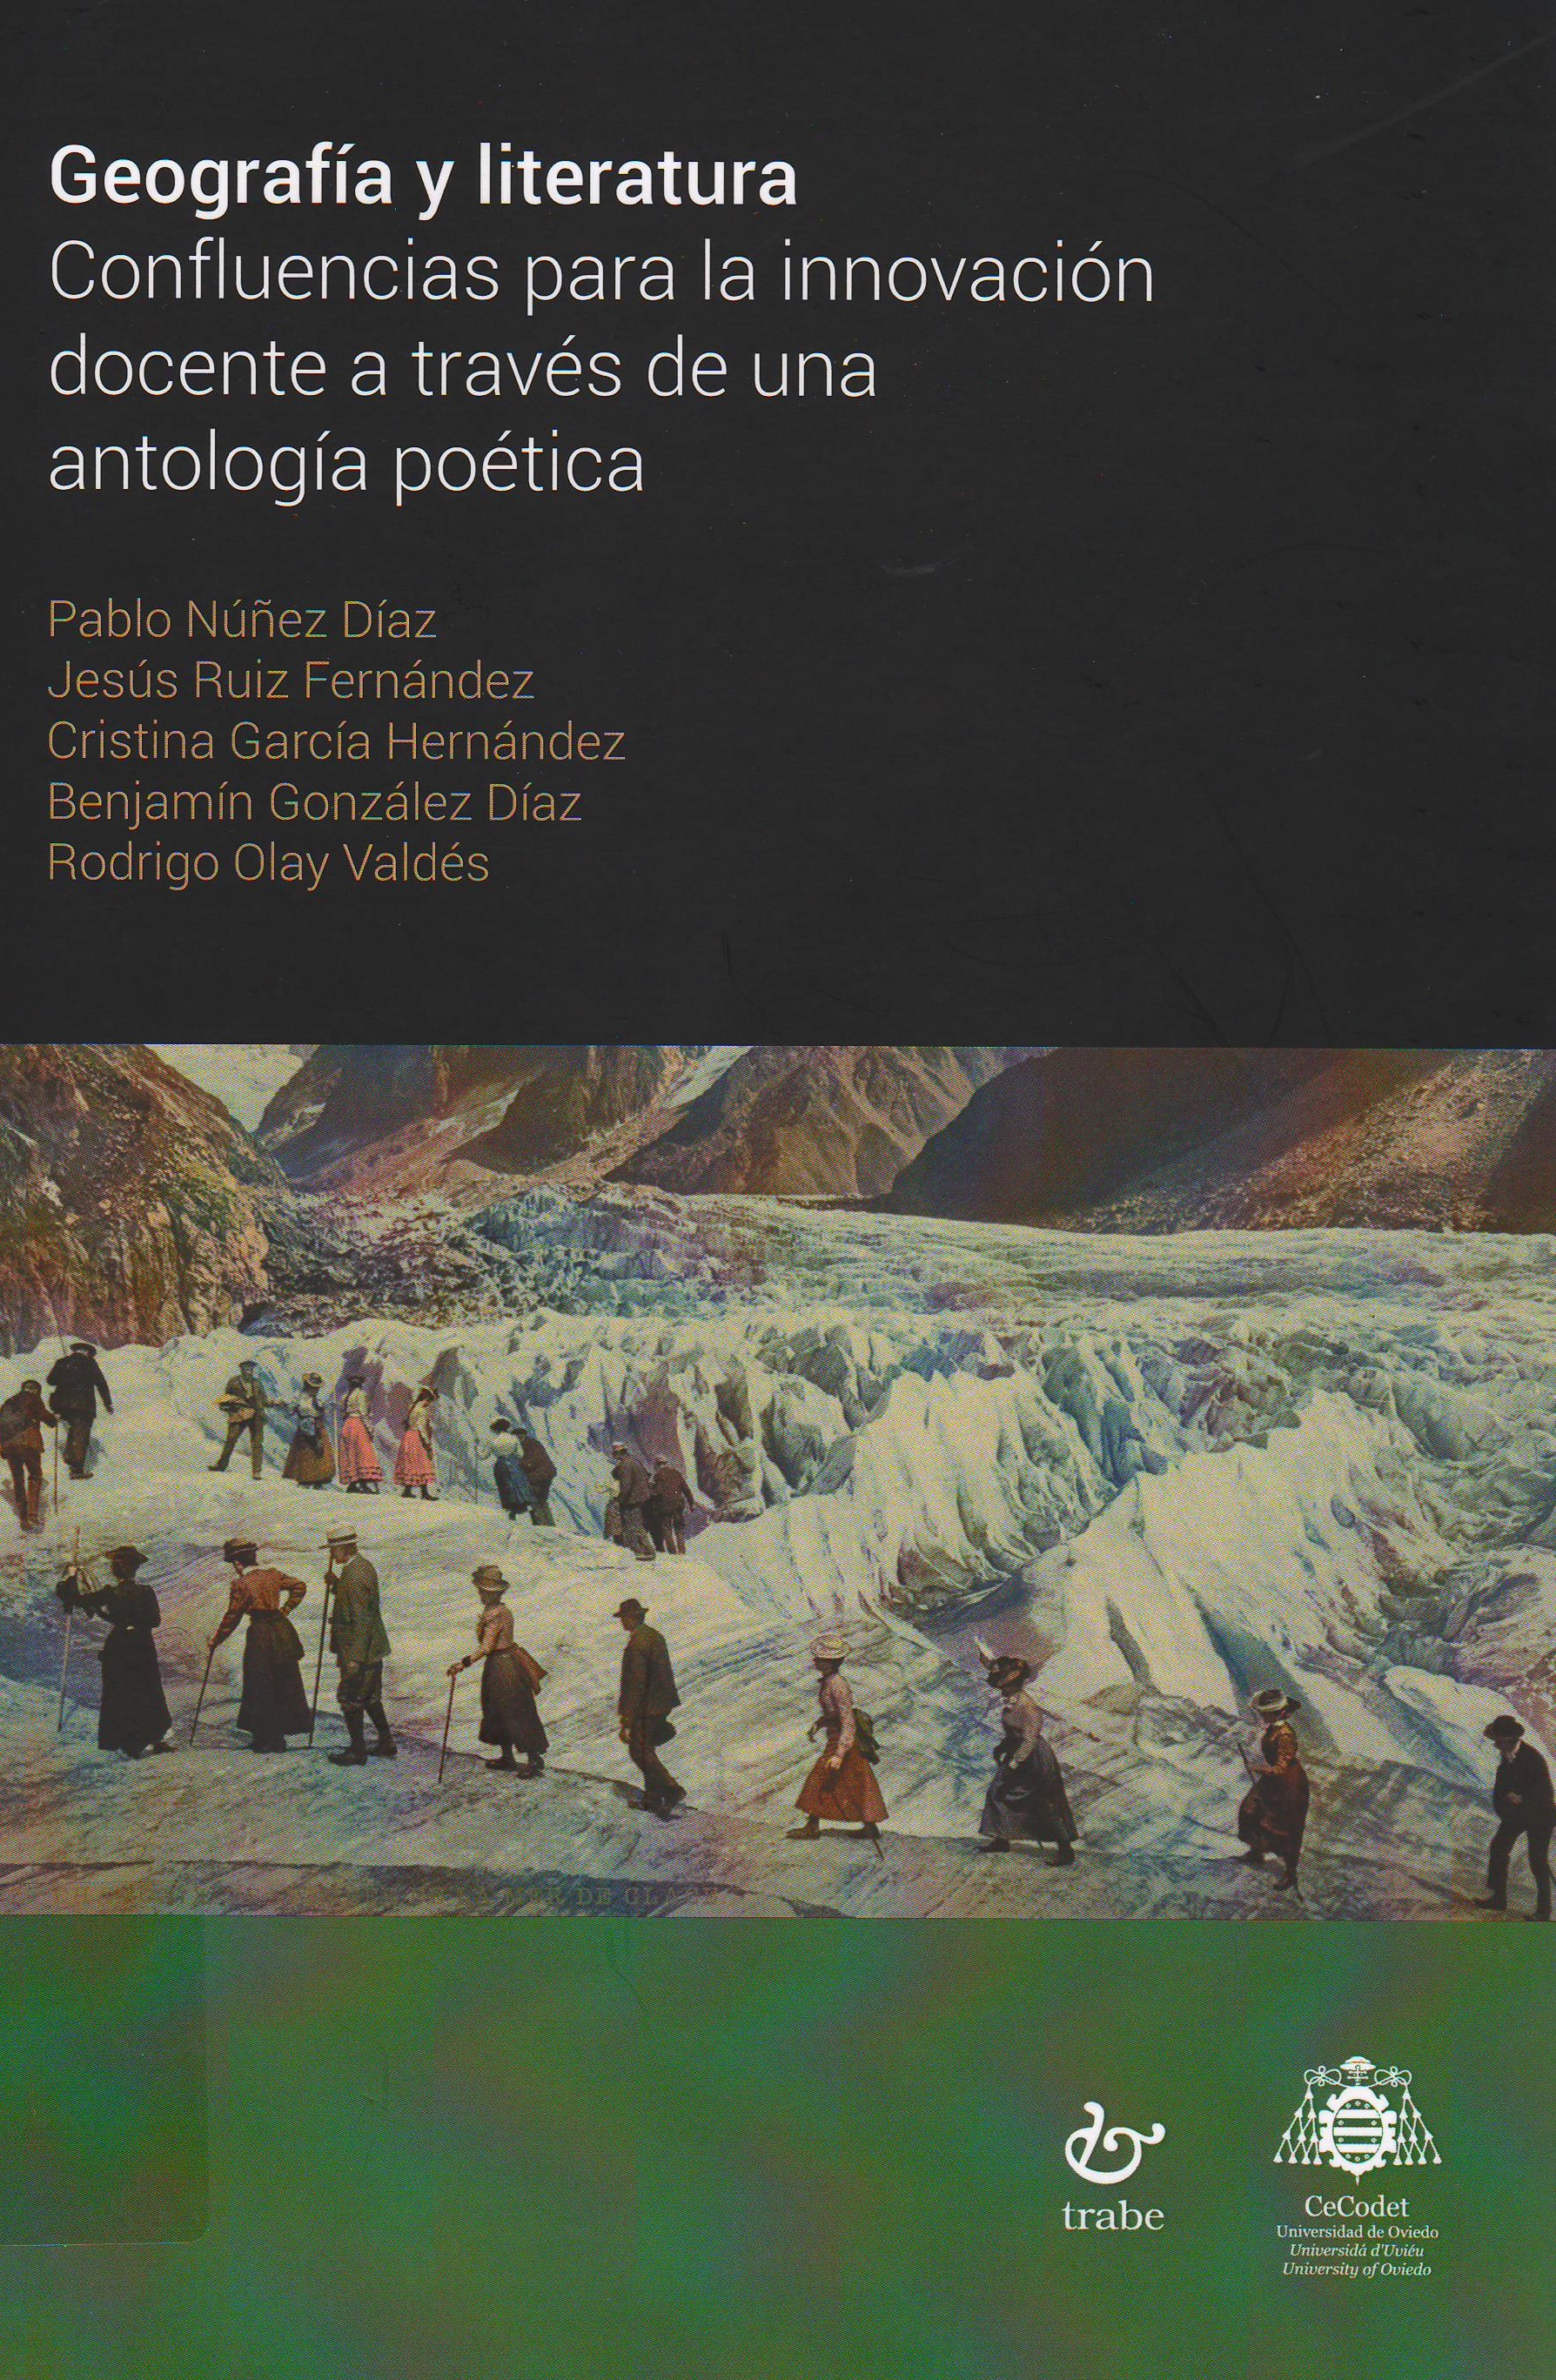 Imagen de portada del libro Geografía y literatura